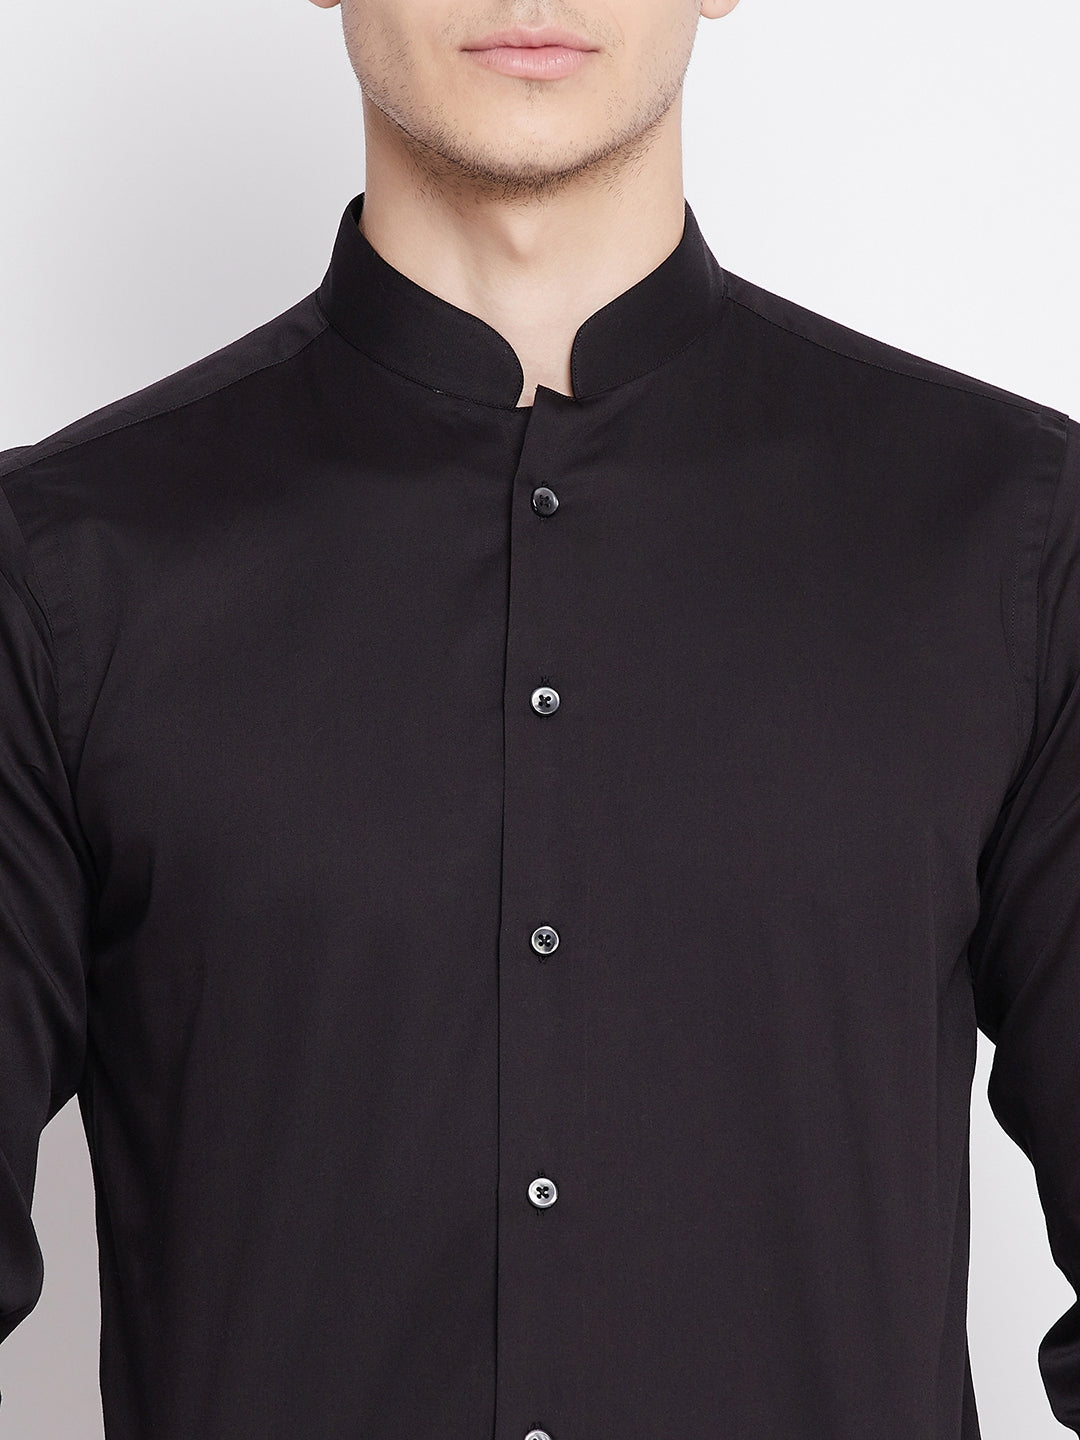 Jet Black Satin Cotton Dress Shirt with Mandarin Collar